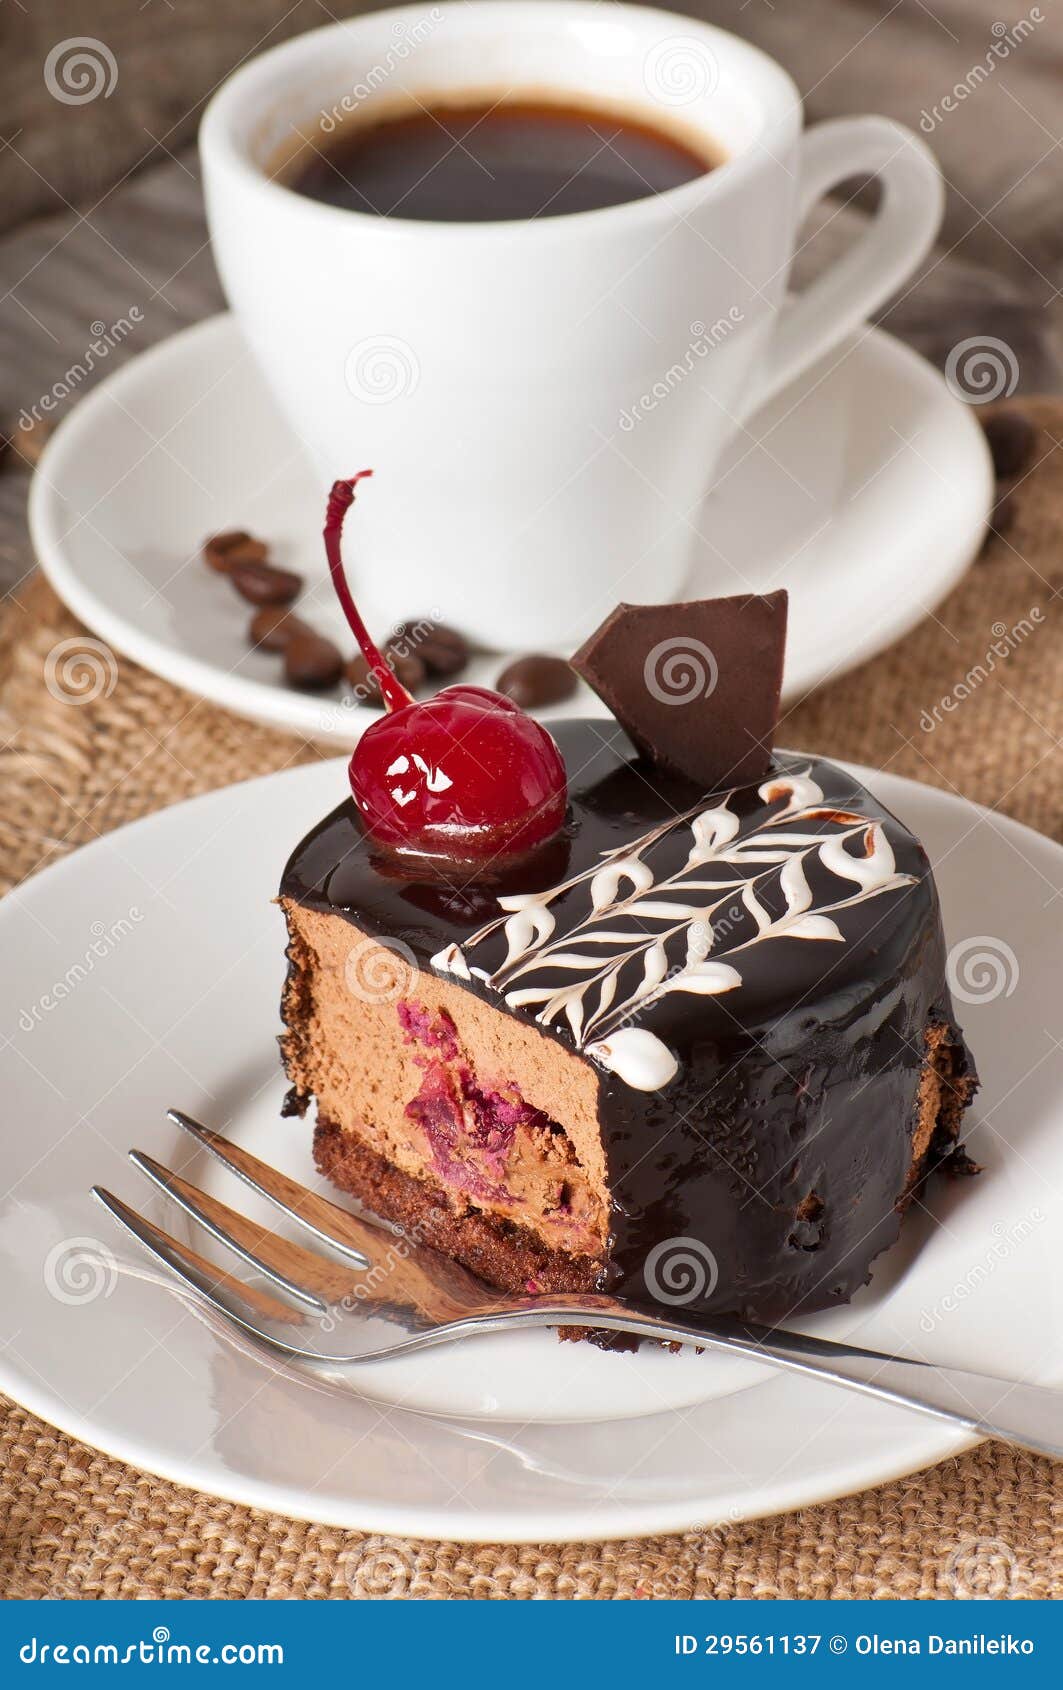 dessert-dolce-e-una-tazza-di-caff%C3%A8-29561137.jpg